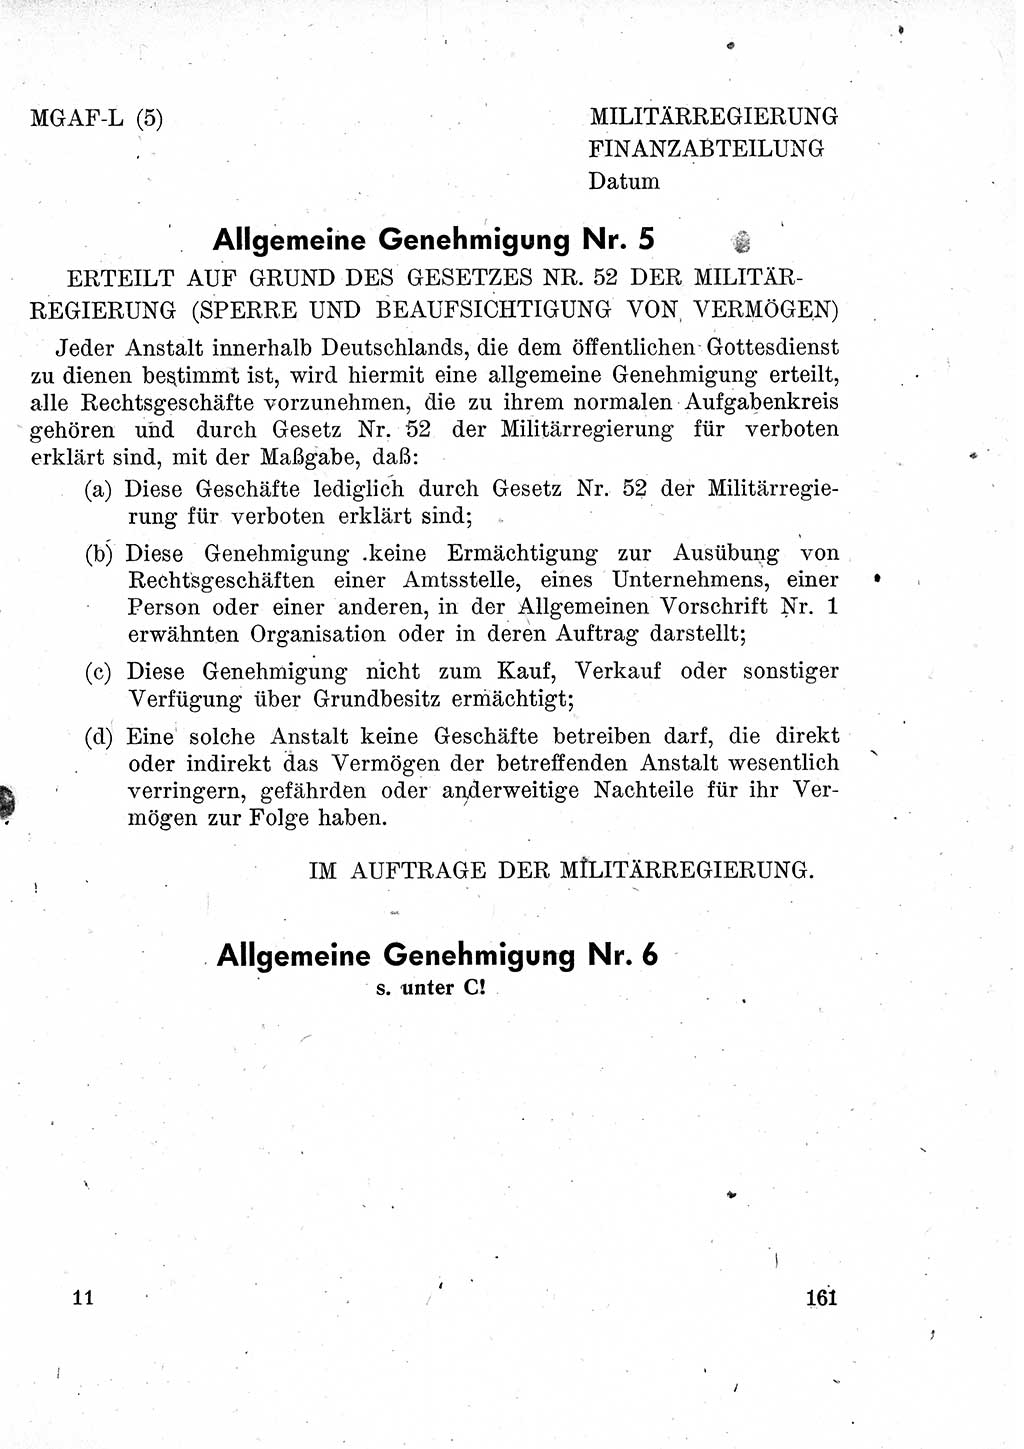 Das Recht der Besatzungsmacht (Deutschland), Proklamationen, Deklerationen, Verordnungen, Gesetze und Bekanntmachungen 1947, Seite 161 (R. Bes. Dtl. 1947, S. 161)